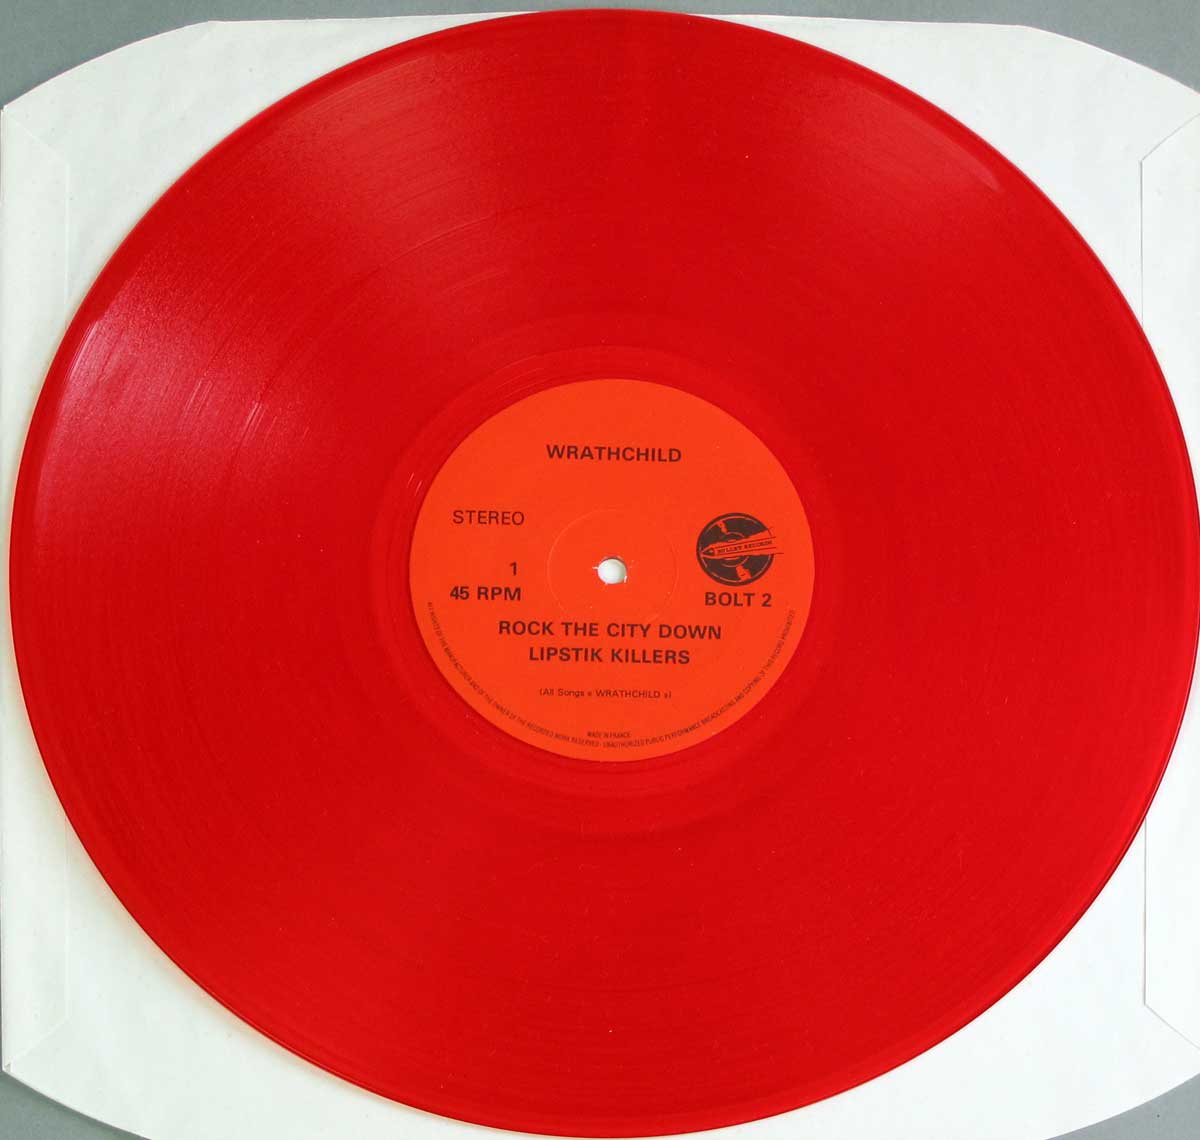 Photo of "WRATHCHILD - Stackheel Strutt" 12" LP Record on Red Vinyl